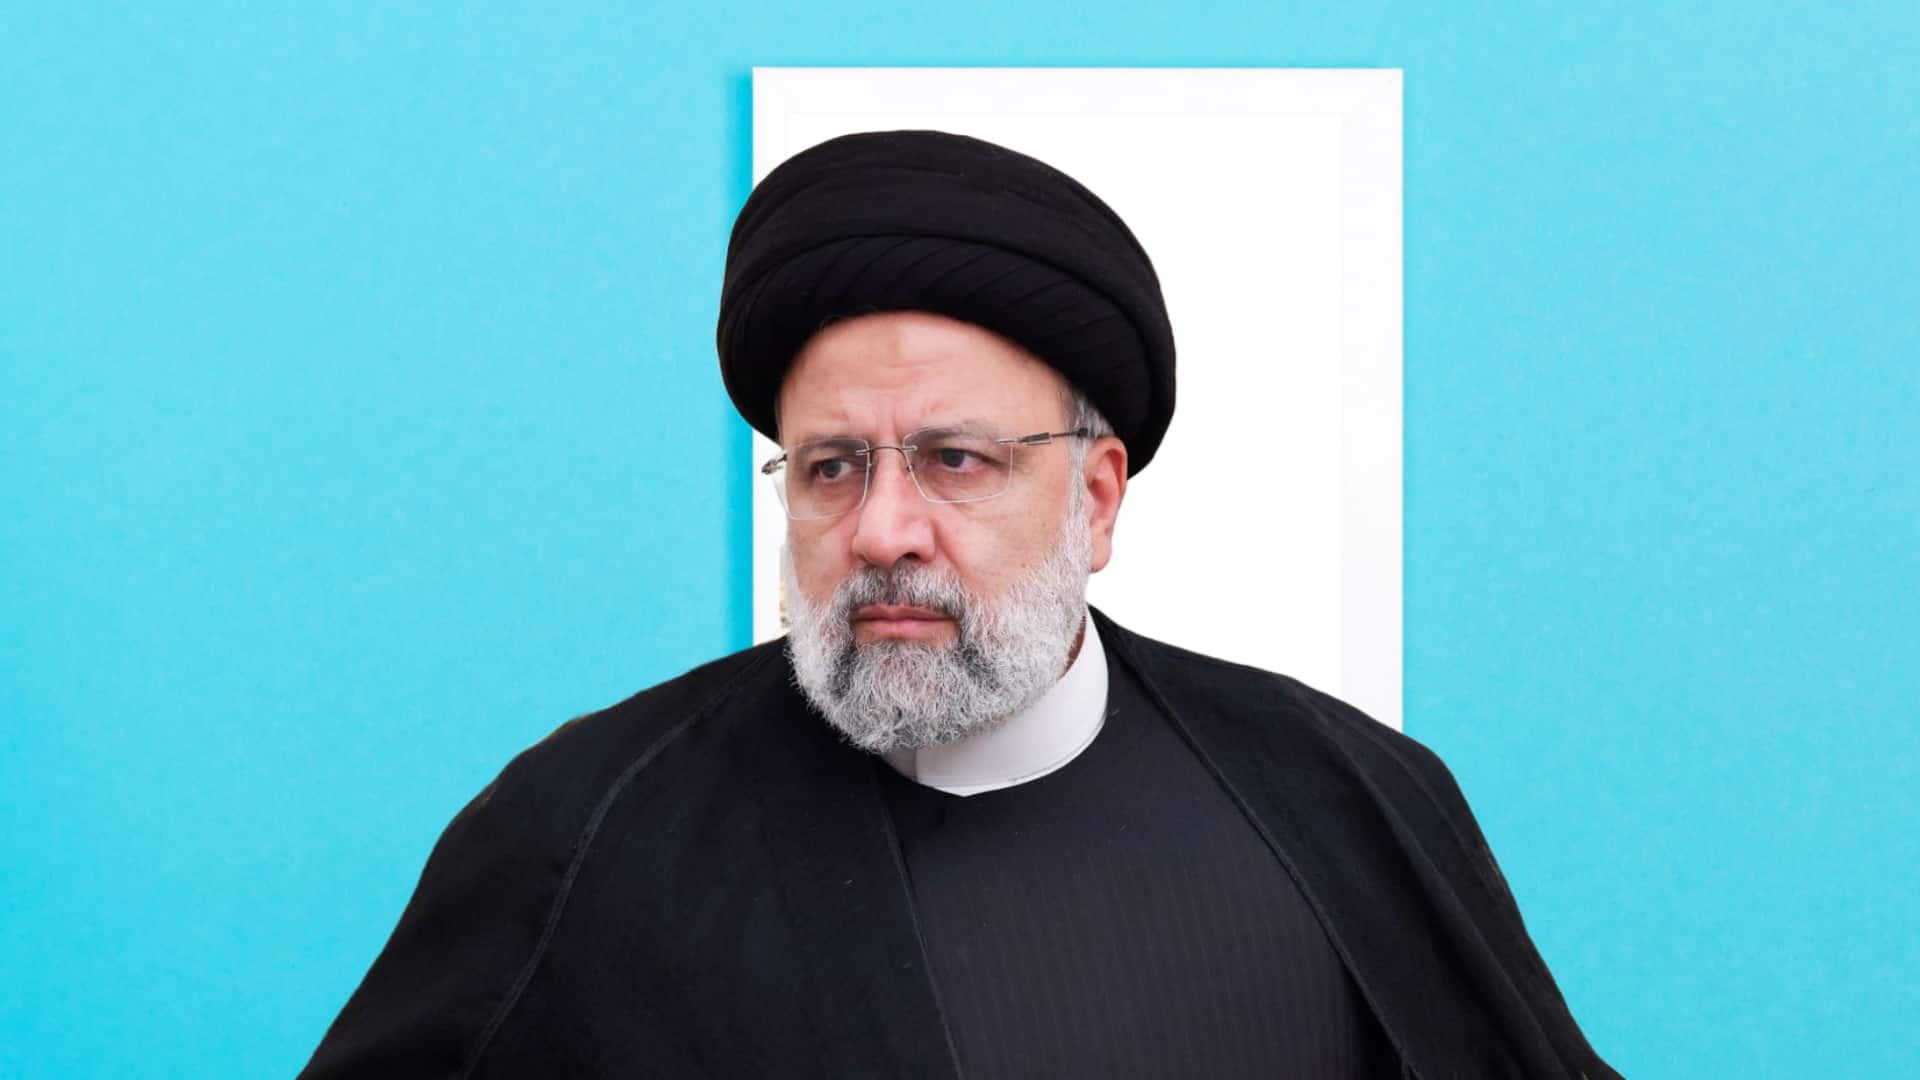 इब्राहिम रईसी: धार्मिक नेता और वकील से लेकर ईरान के राष्ट्रपति बनने तक का सफर